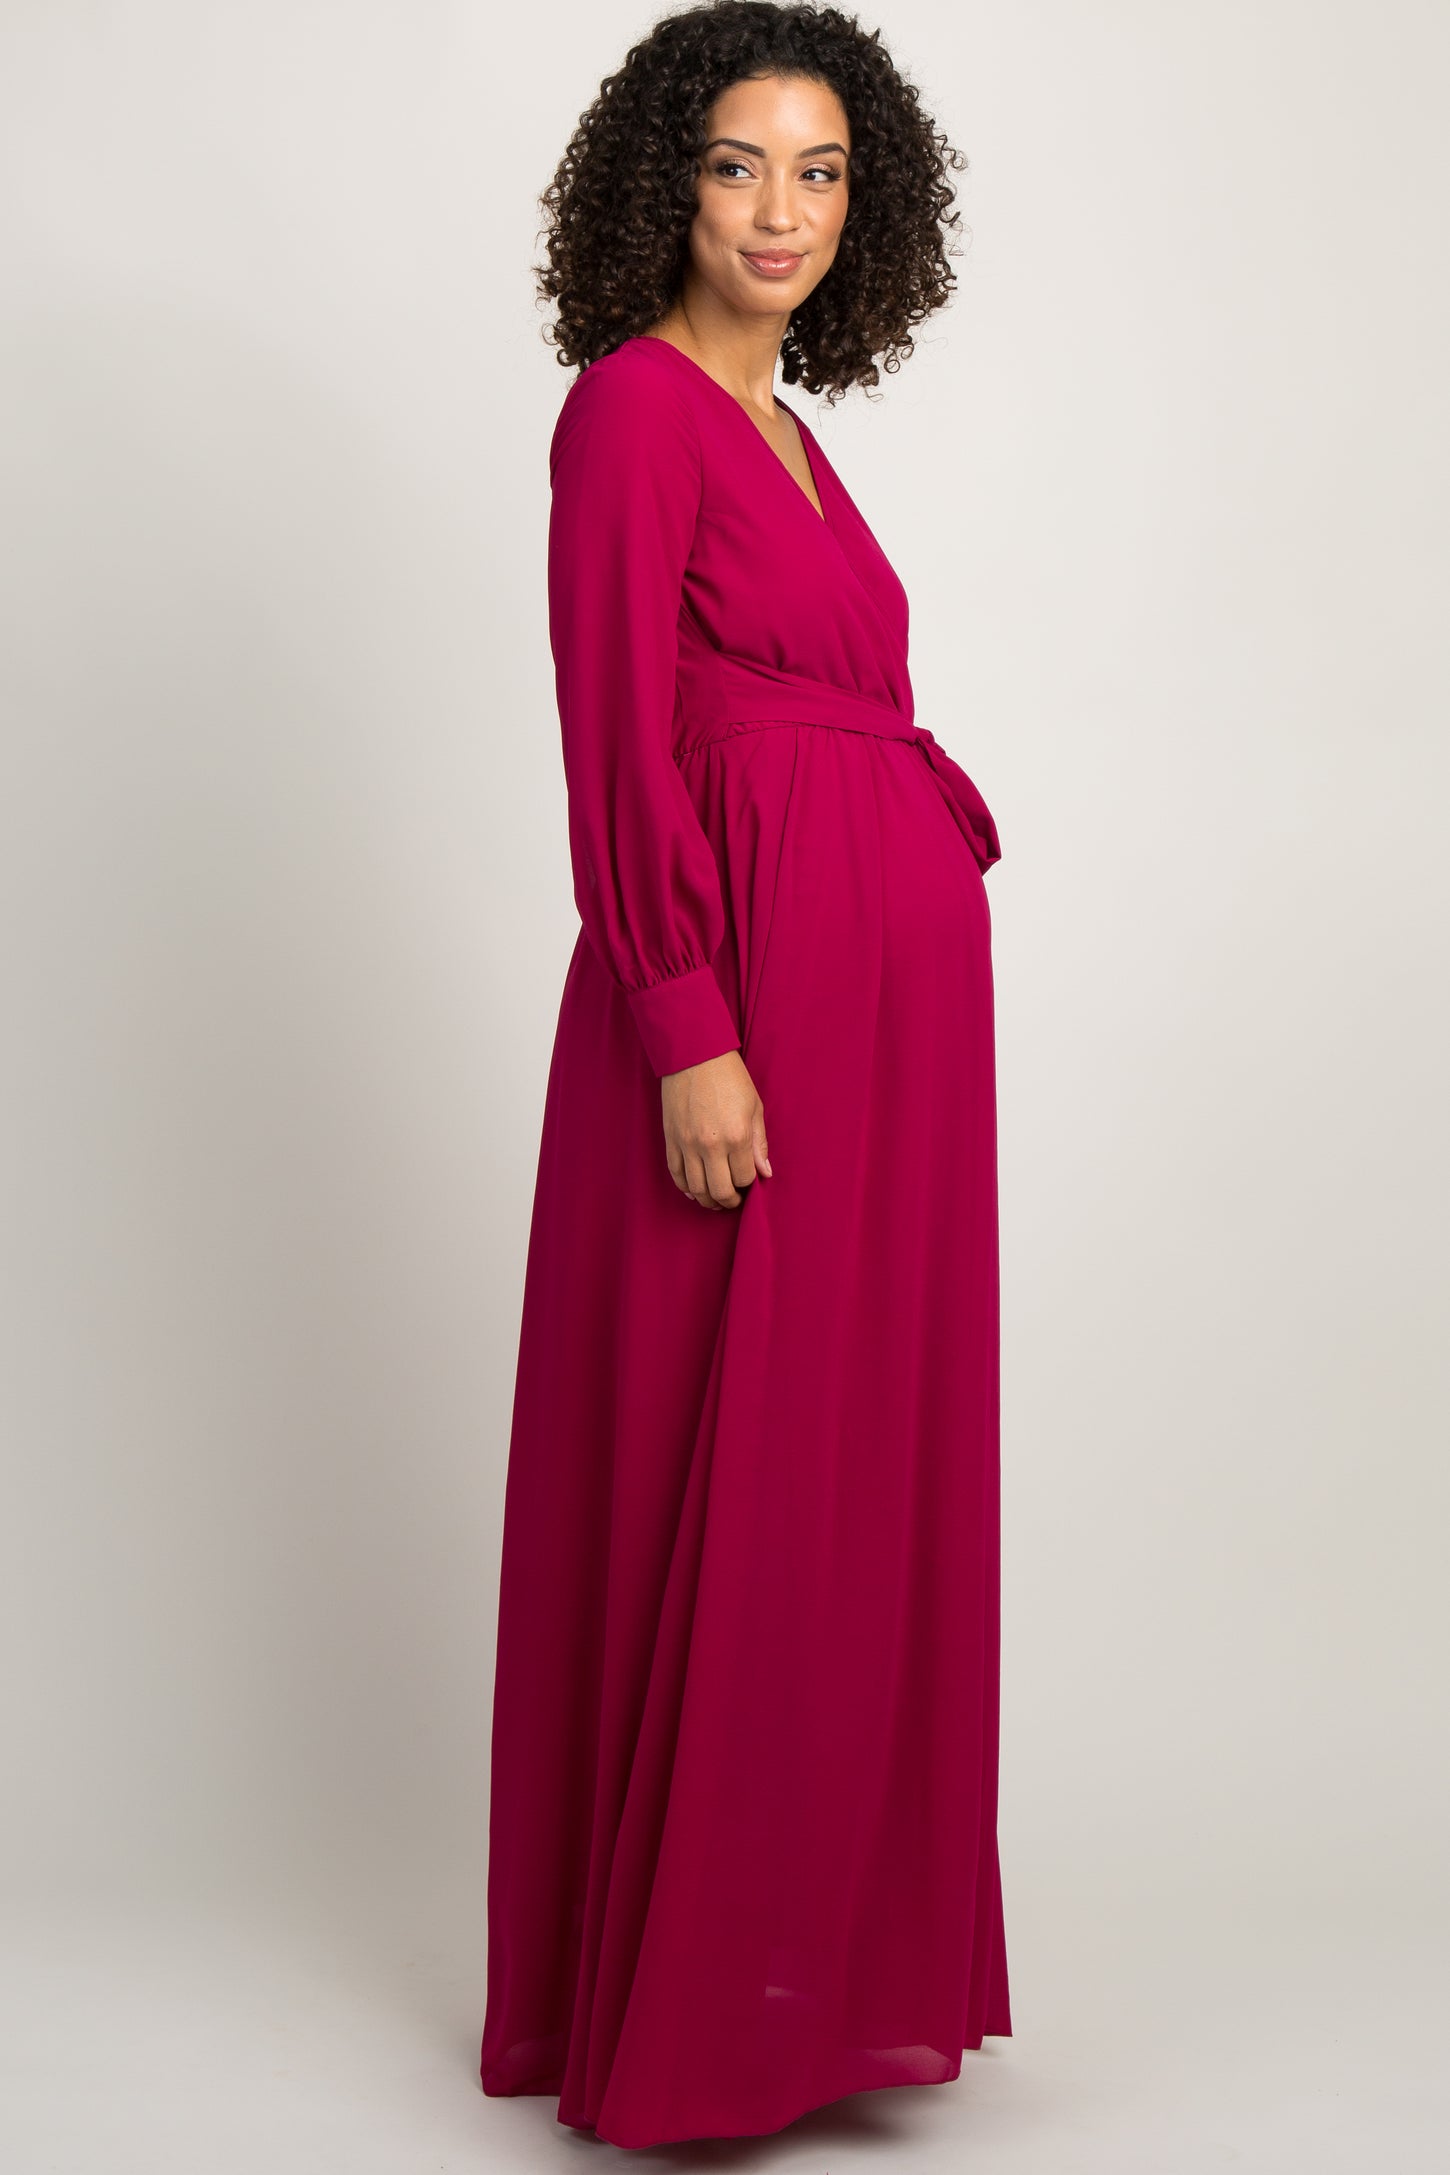 Fuchsia Chiffon Long Sleeve Pleated Maternity Maxi Dress– PinkBlush